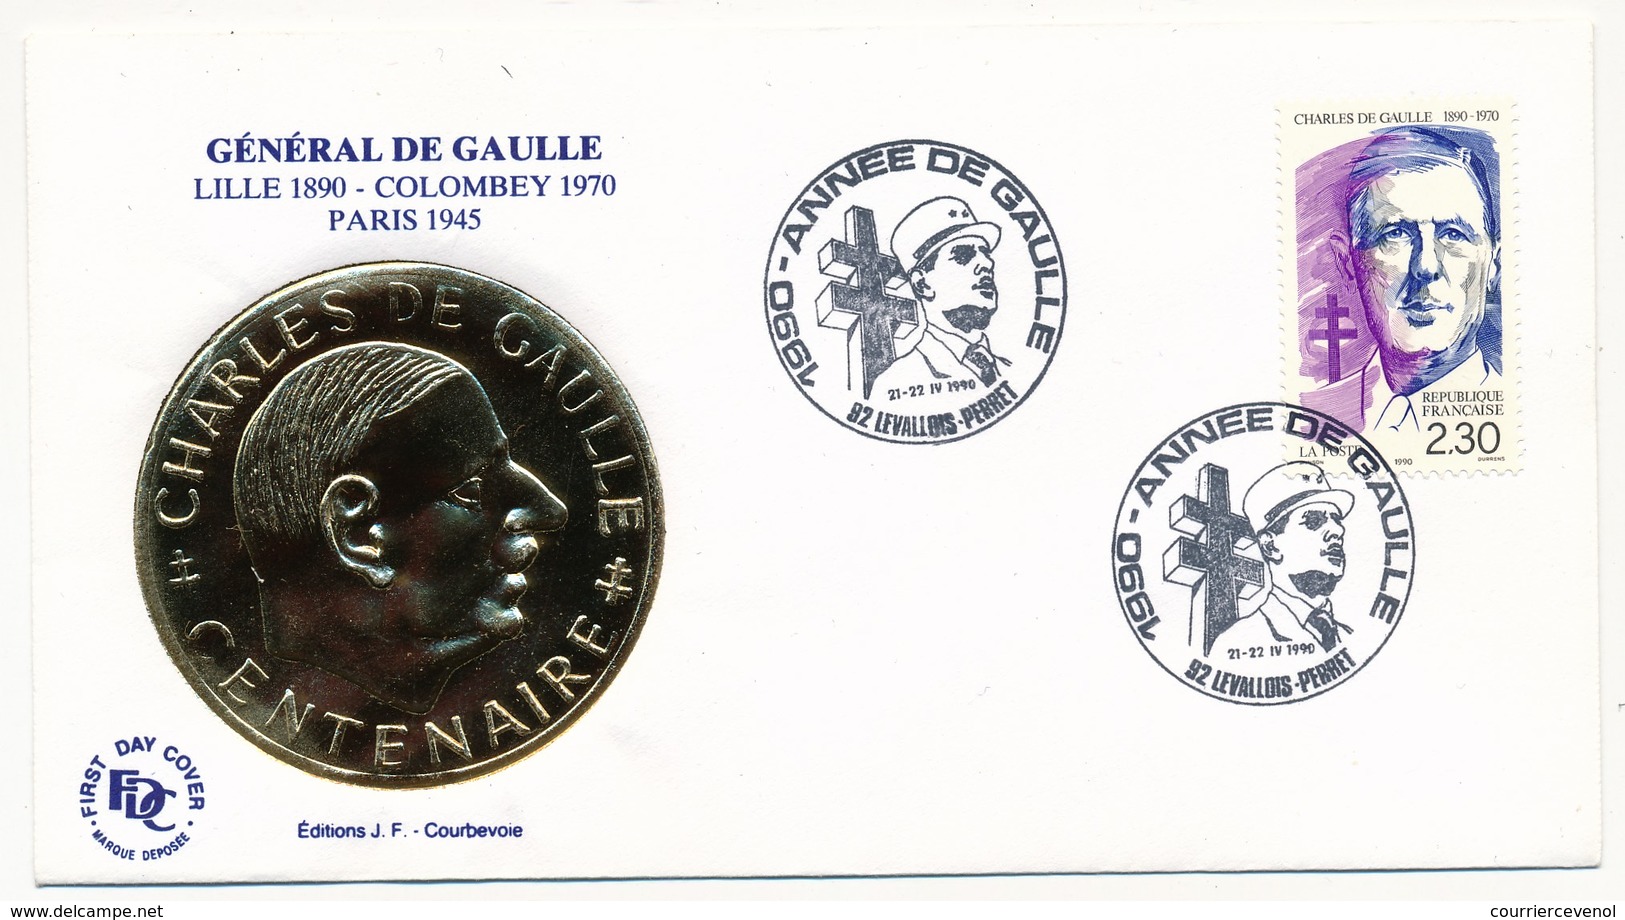 FRANCE - Enveloppe - Cachet Temporaire "1990 Année De Gaulle" - Levallois Perret  - 21/22.4.1990 - De Gaulle (Generaal)